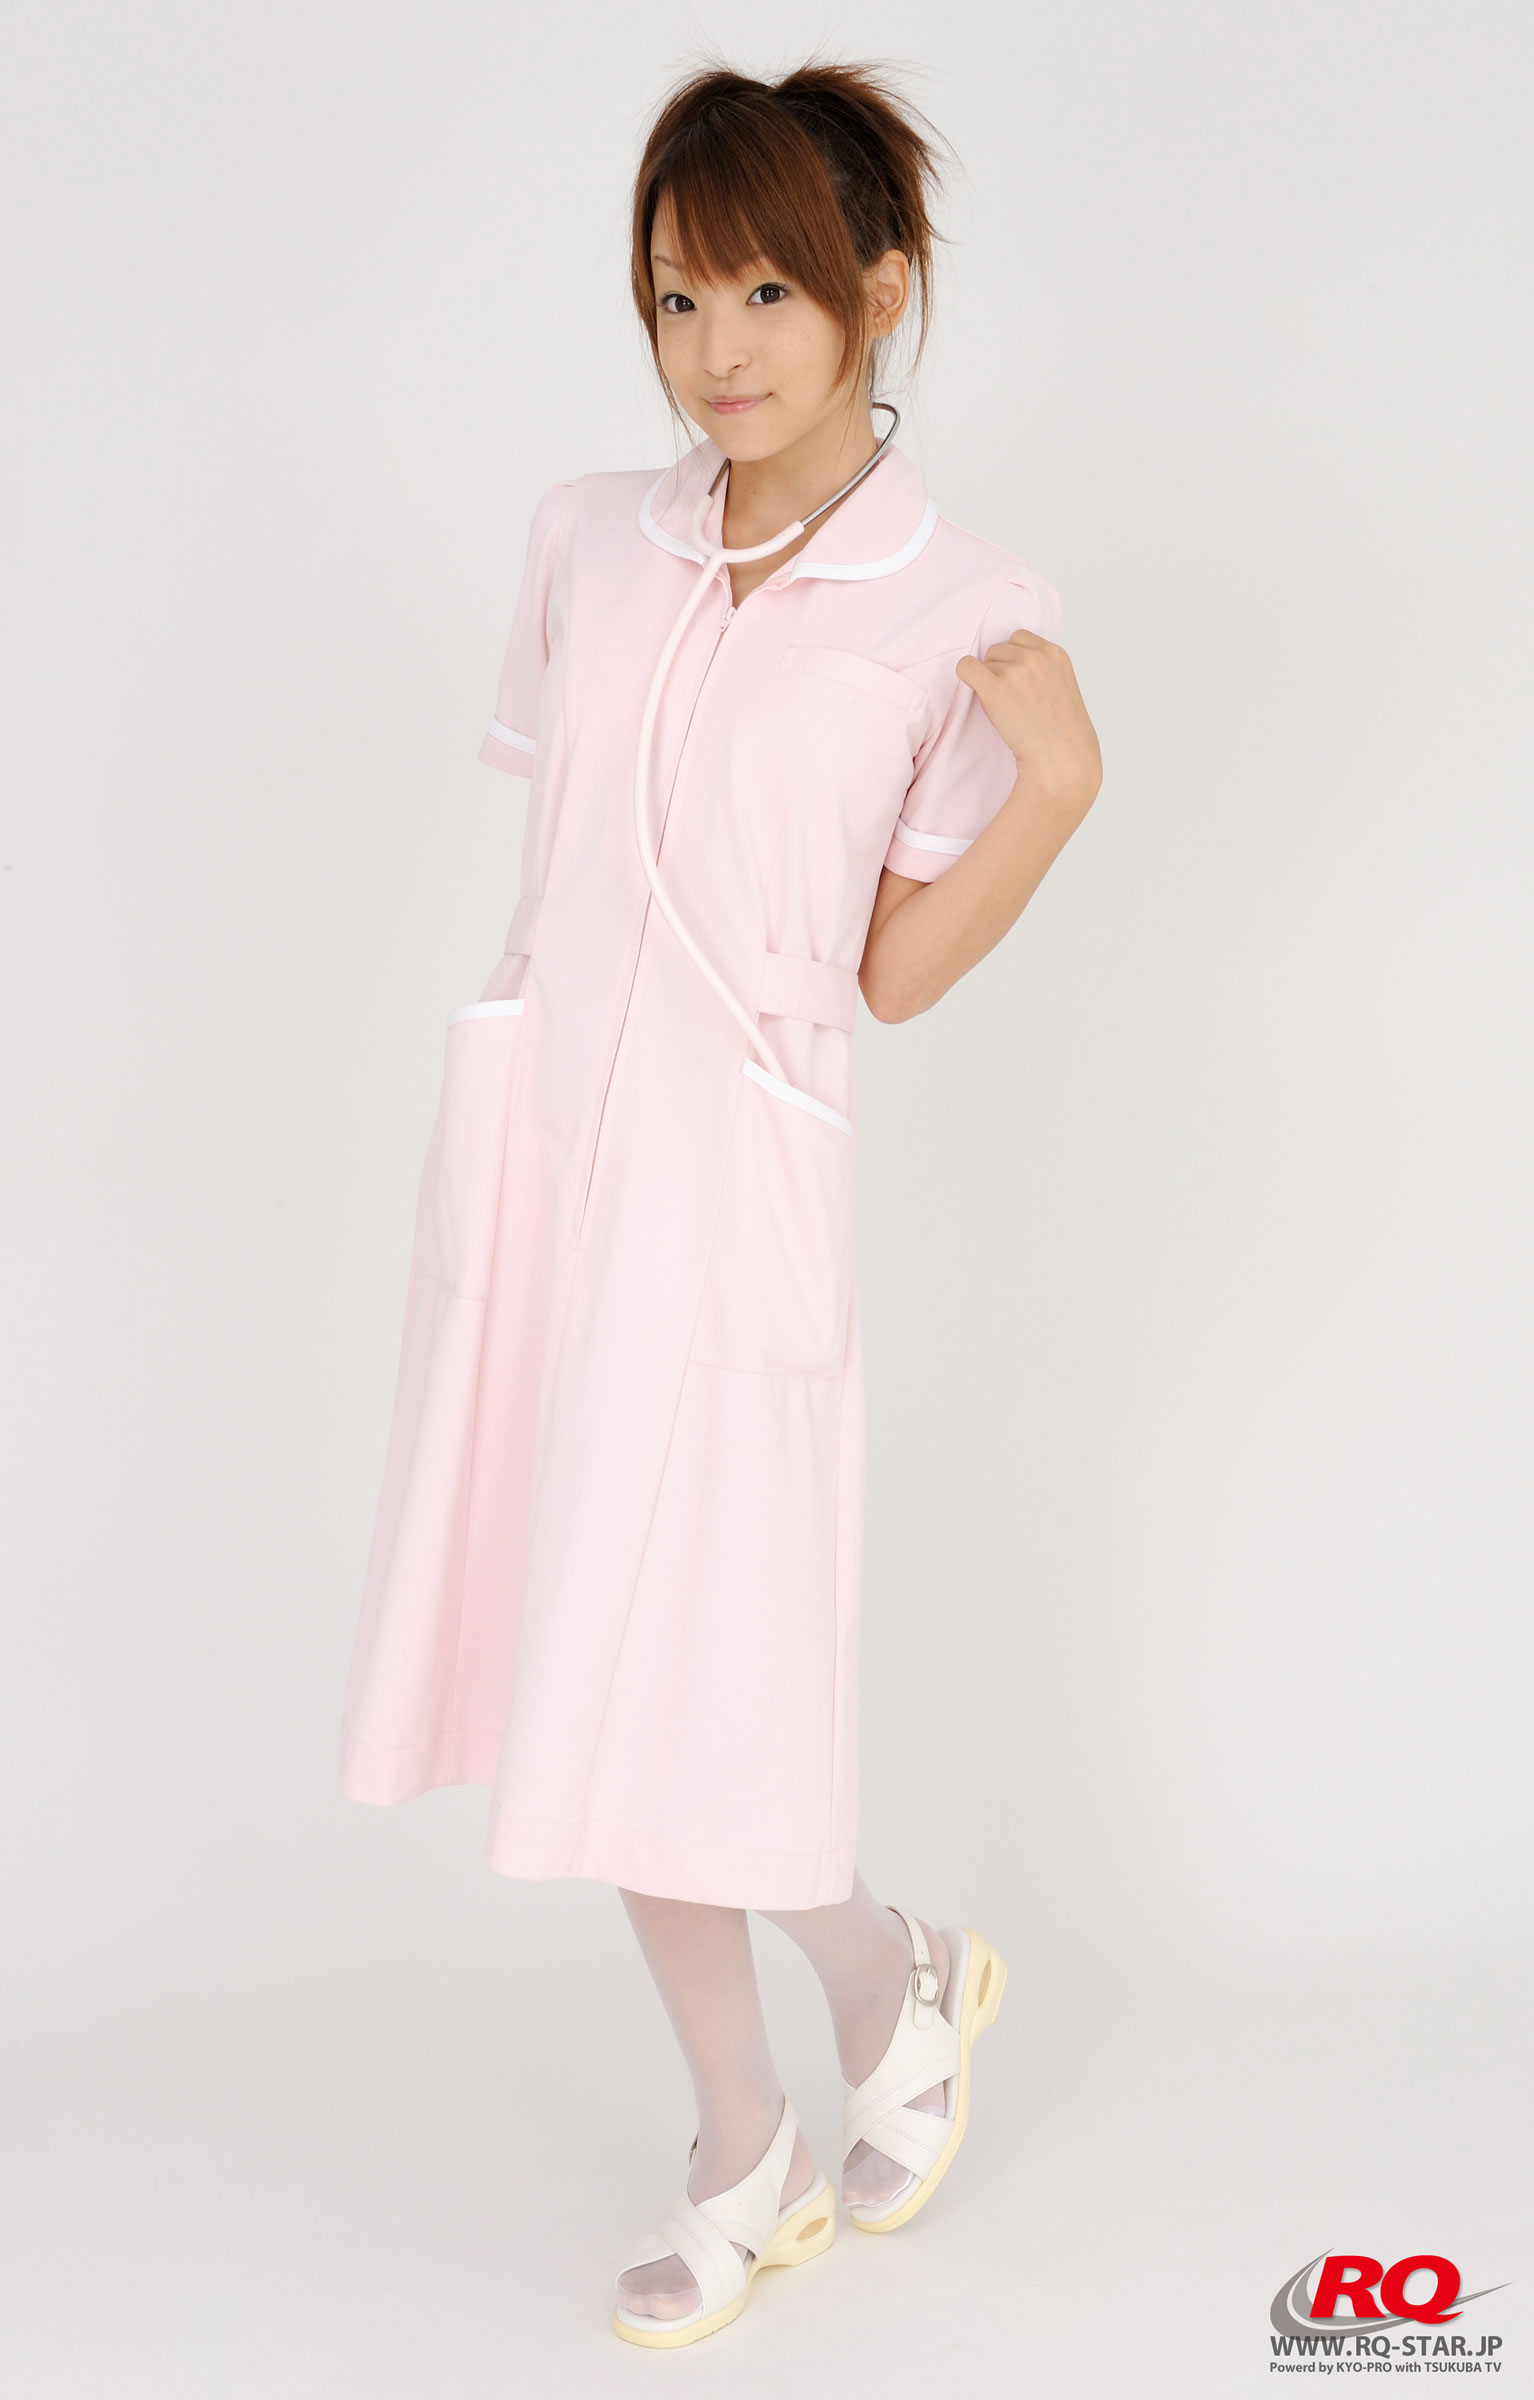 日本写真偶像青木未央清纯护士装套图